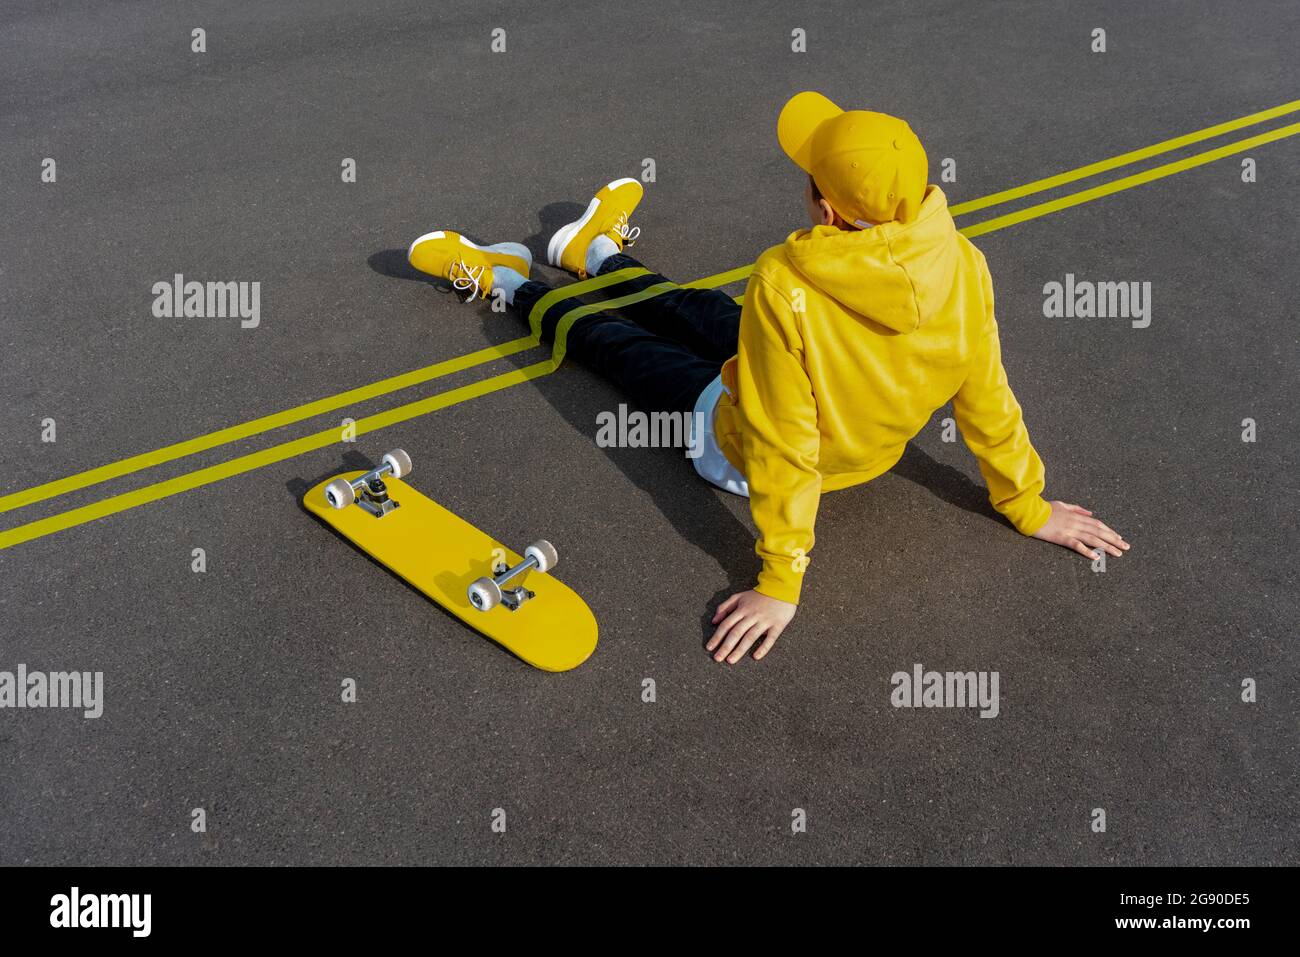 Rubans adhésifs jaunes sur les jambes de garçon par planche à roulettes sur la route Banque D'Images